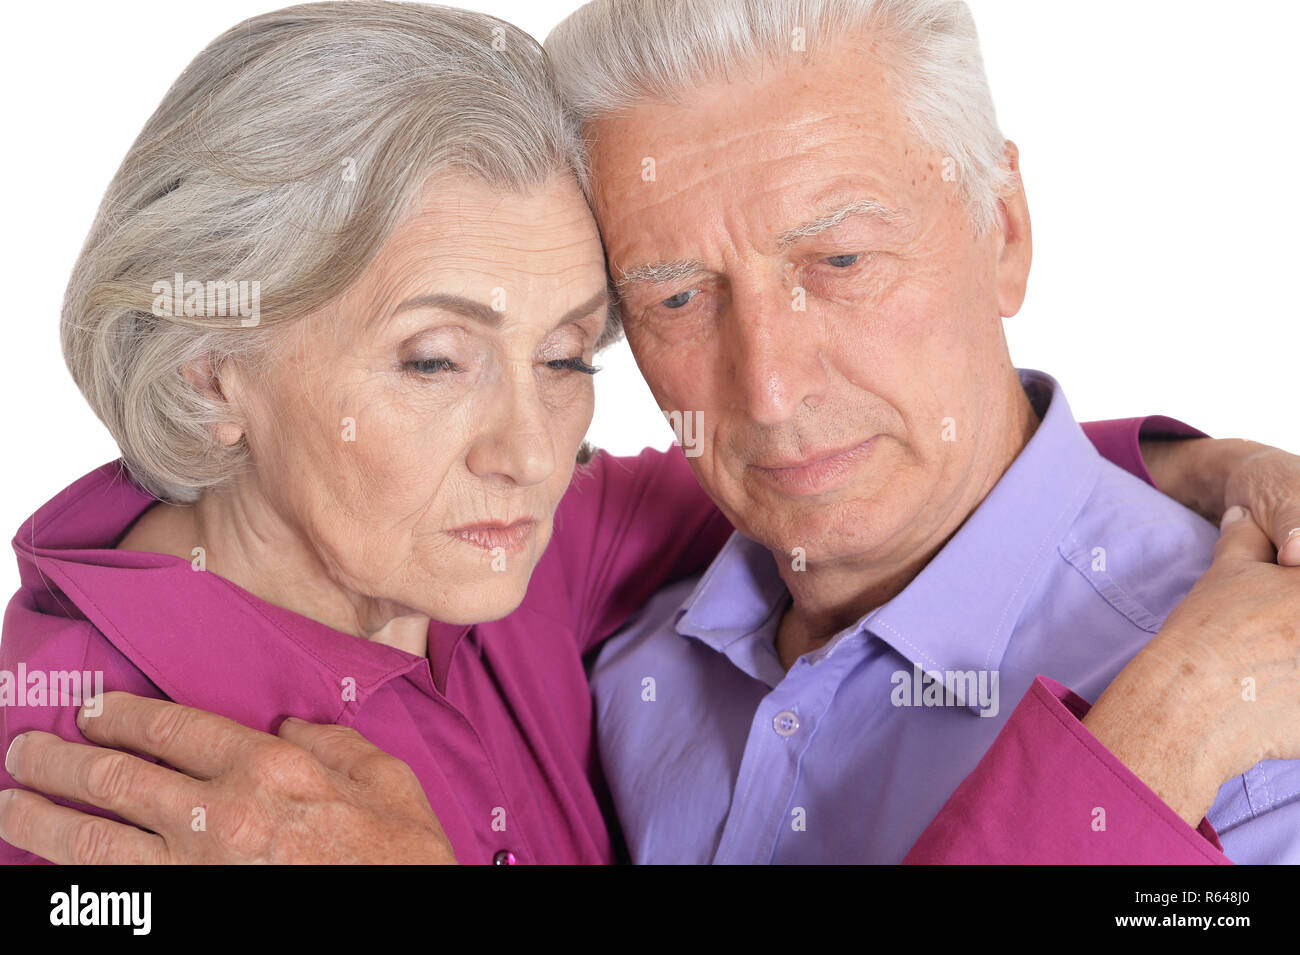 Sad senior couple isolated on white background Stock Photo